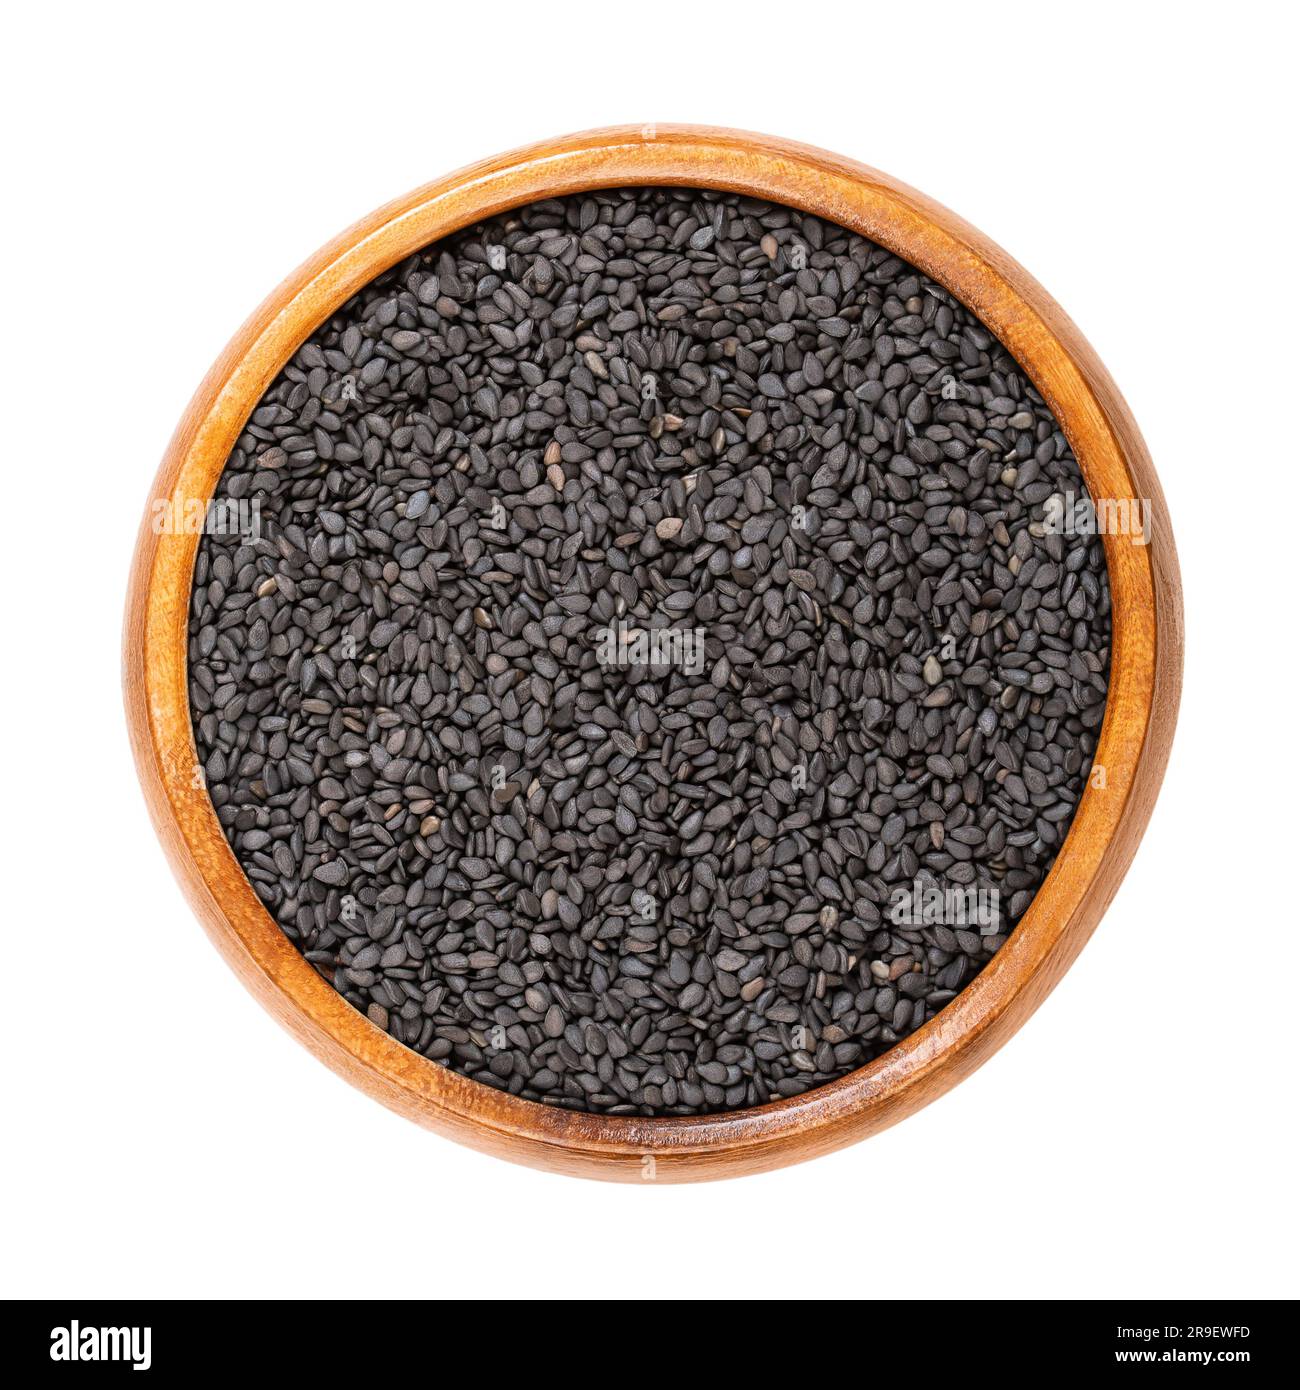 Schwarzer Sesam, in einer Holzschüssel. Nicht hüllte Samen von Sesamum indicum, mit reichem und nussigem Geschmack und mit einem der höchsten Ölgehalte aller Samen. Stockfoto